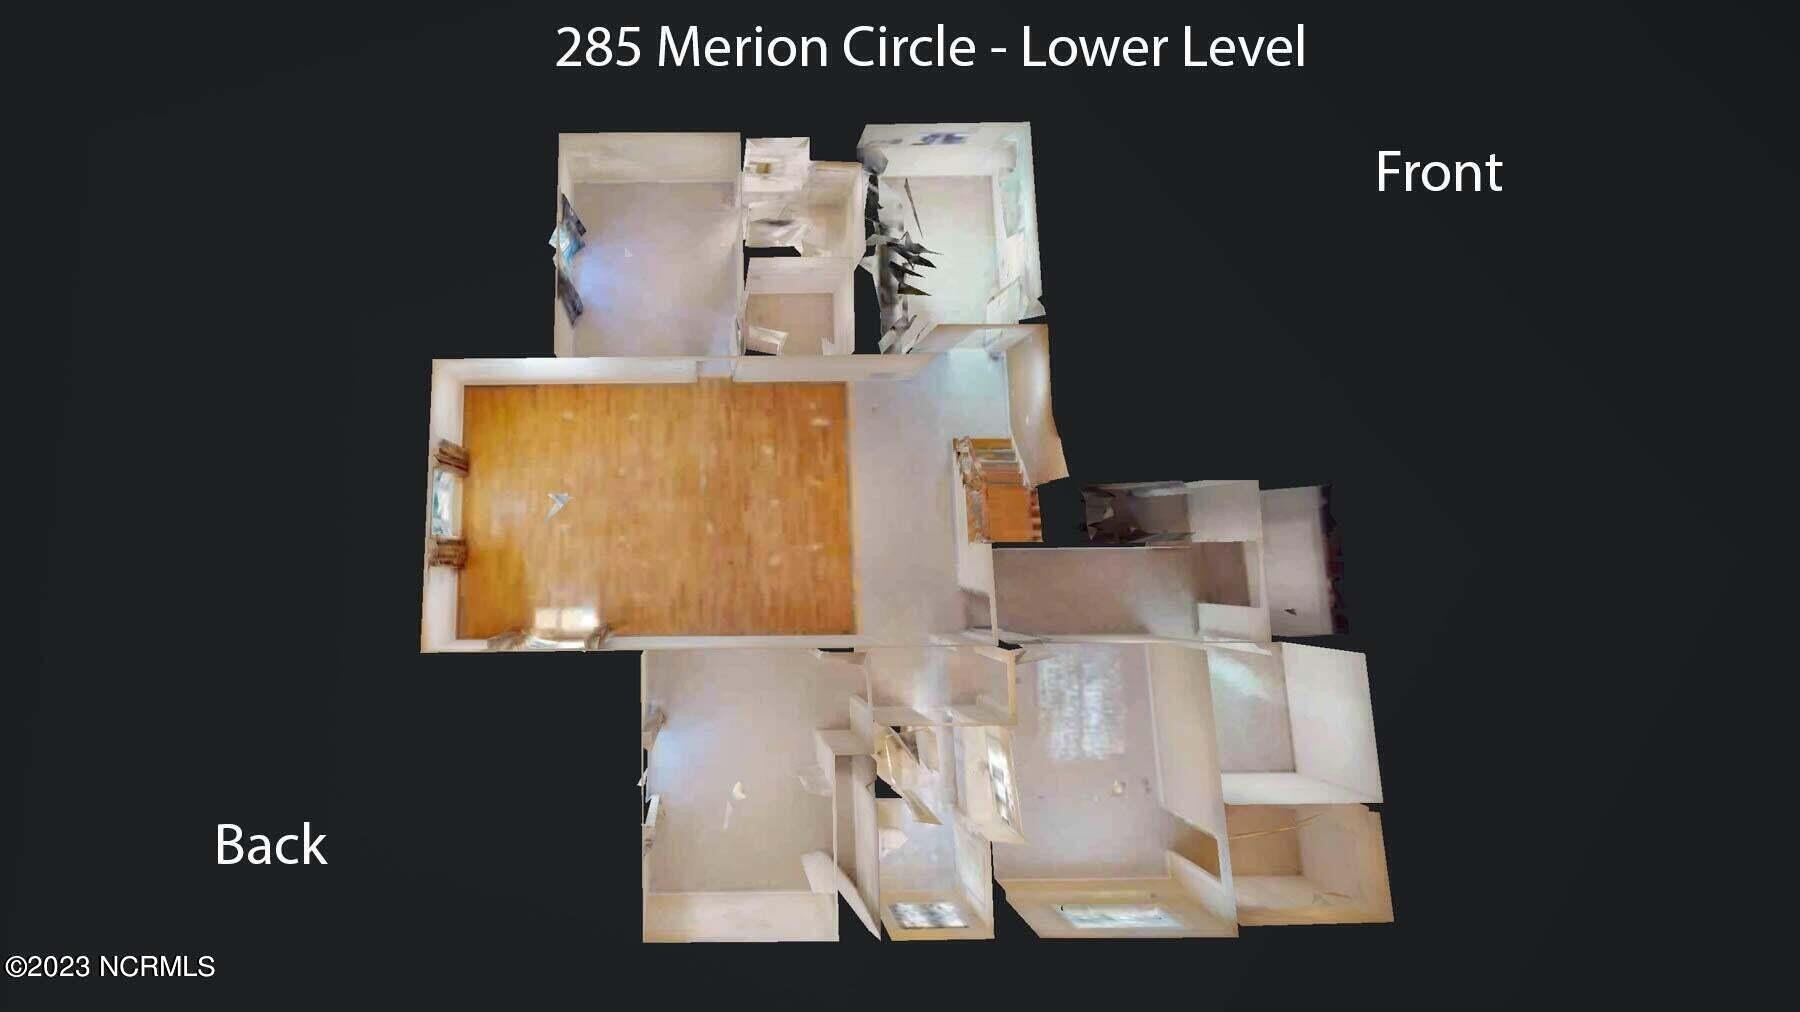 36. 285 Merion Circle